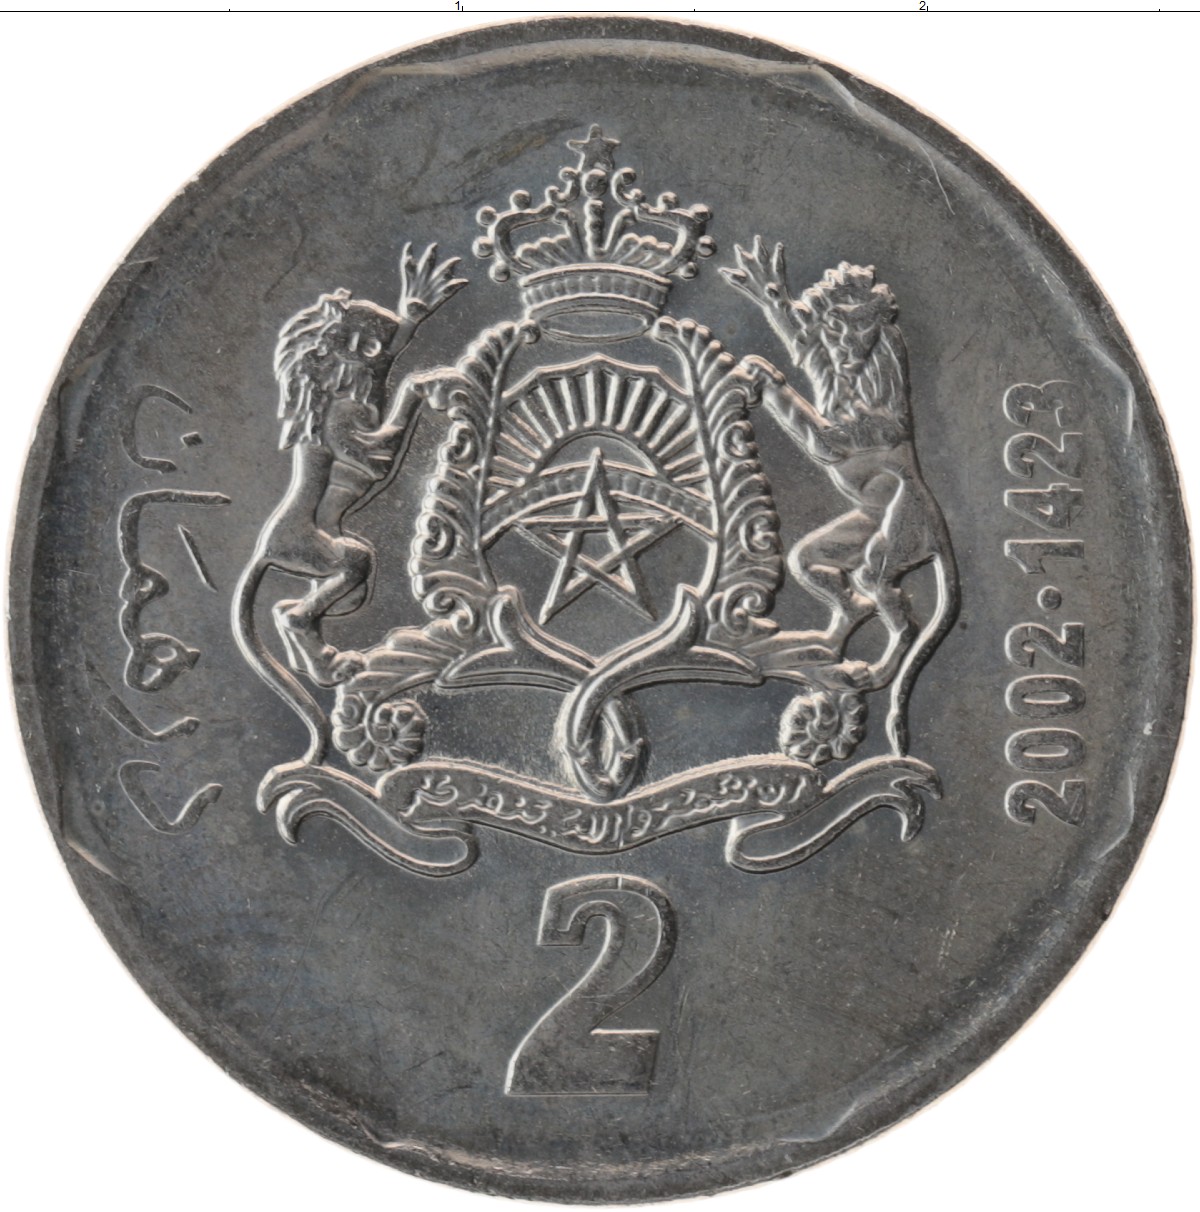 2 дирхама. 1/2 Дирхама 2002. 2 Дирхама монета. Монета Марокко 1/2 дирхама 2002. Монета 2 дирхама Марокко 2002 года.